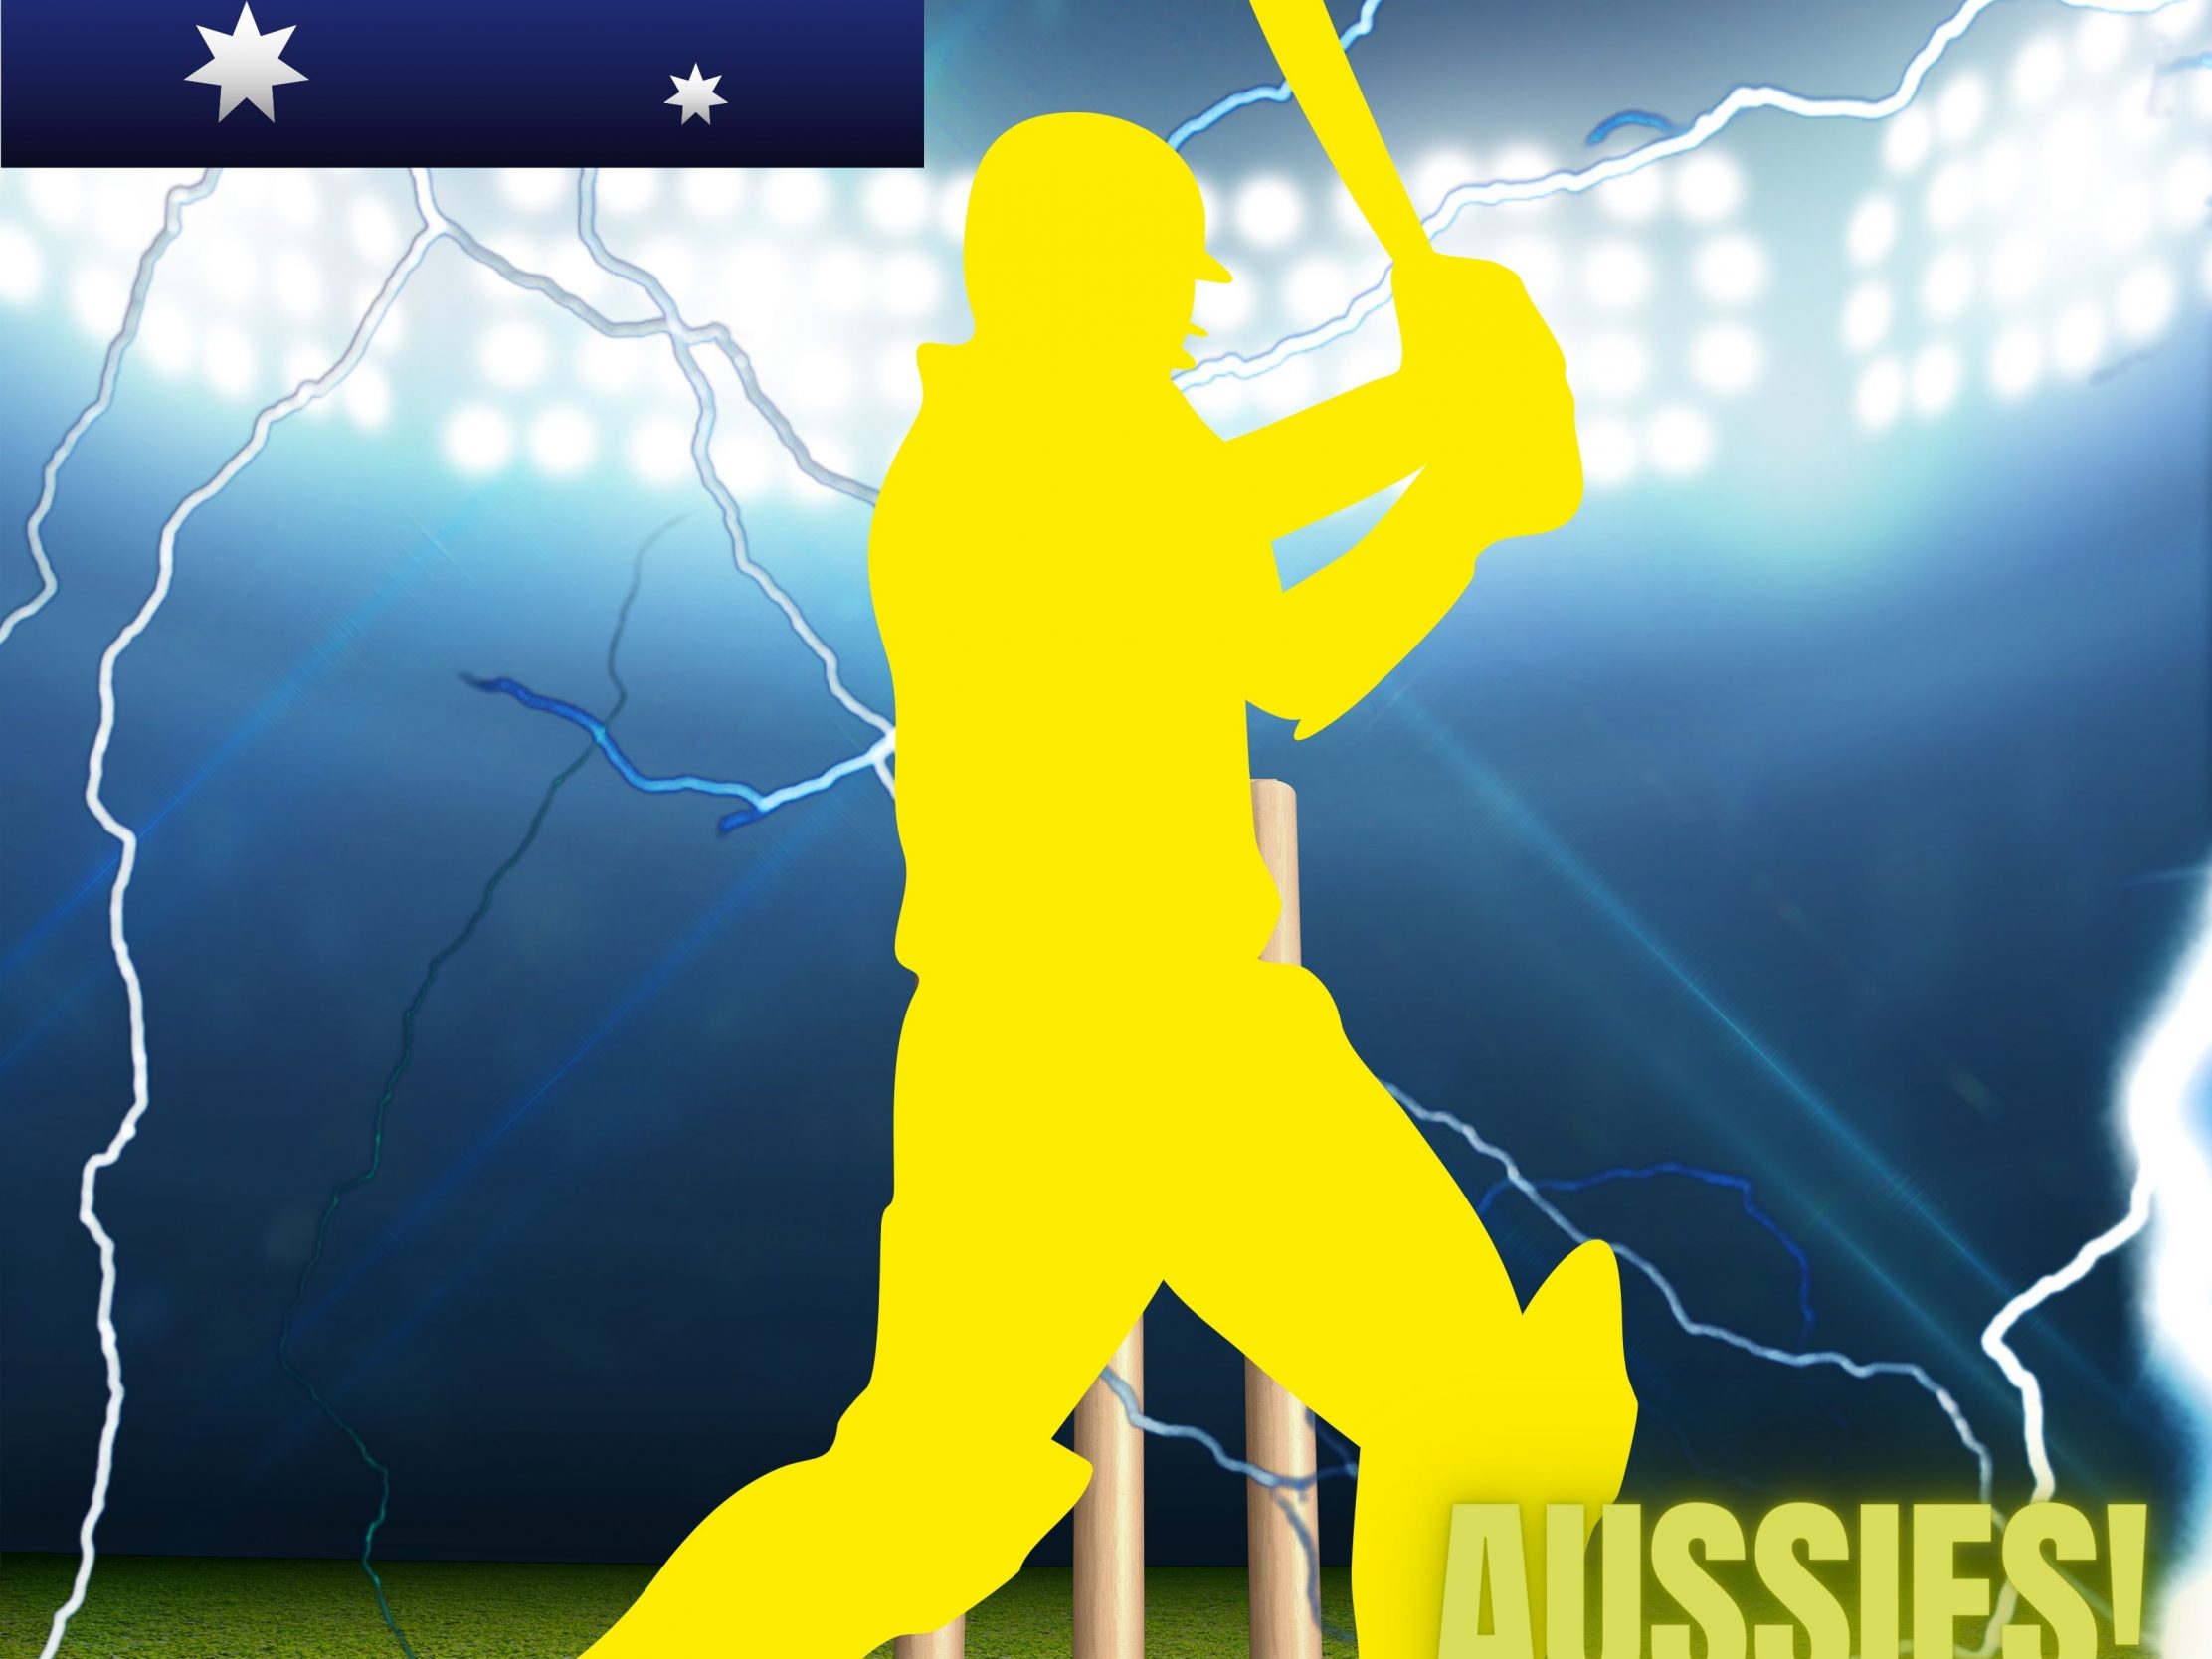 2224x1668 iPad Pro wallpapers Australia Cricket Stadium iPad Wallpaper 2224x1668 pixels resolution